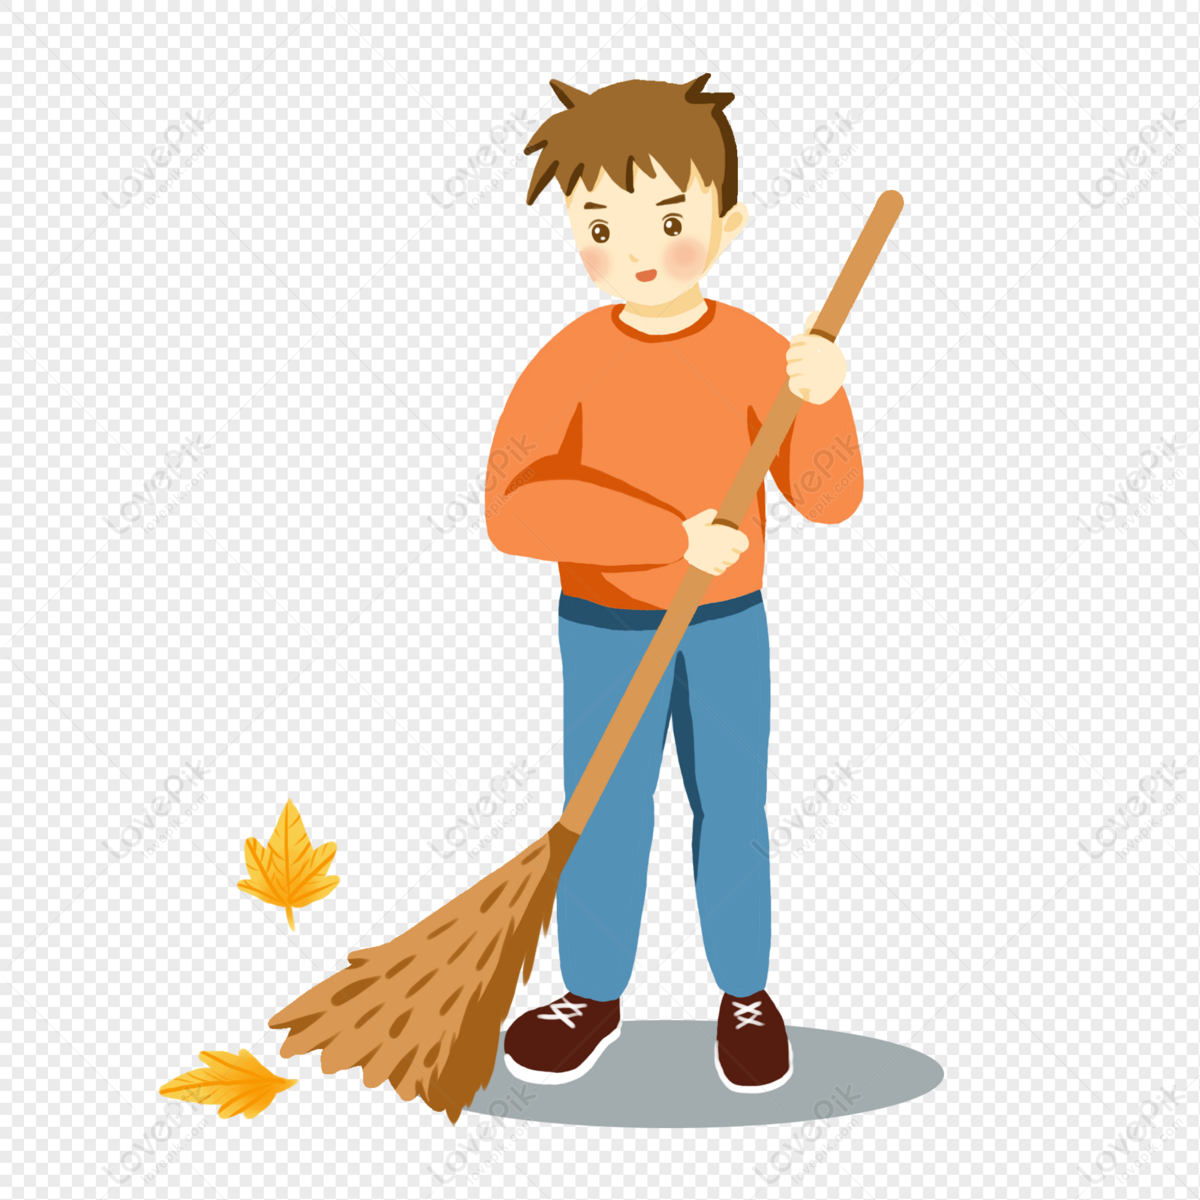 boy sweeping the floor clip art